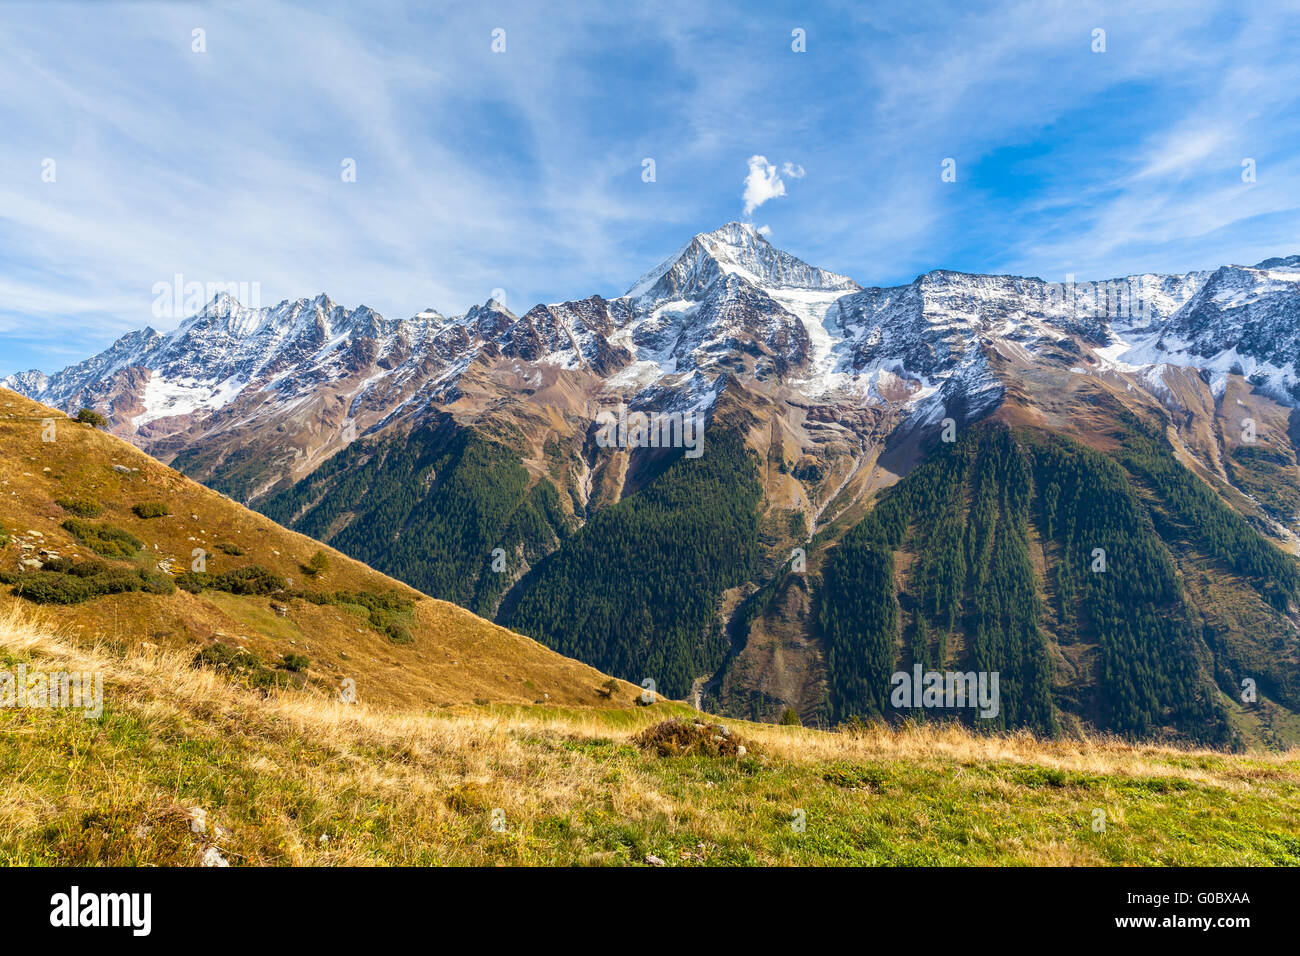 Splendida vista del Bietschhorn e la catena montuosa delle Alpi nel cantone del Vallese dal sentiero escursionistico al di sopra della Loetschental vall Foto Stock